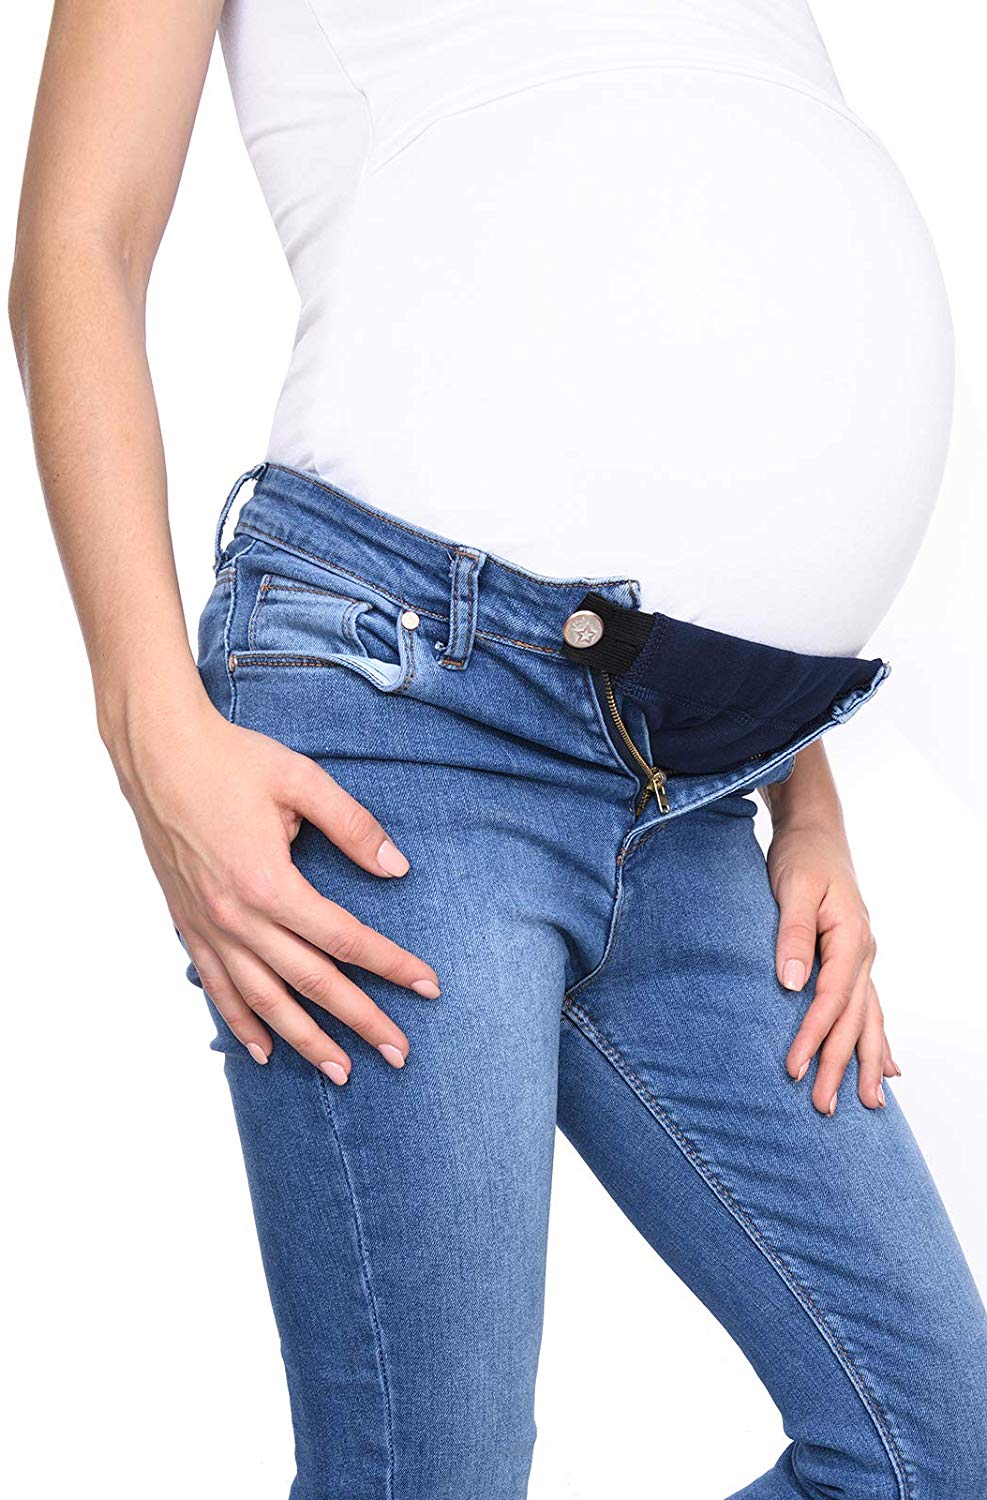 Extenseur de Pantalon de Maternité Réglable Extension de Bouton de